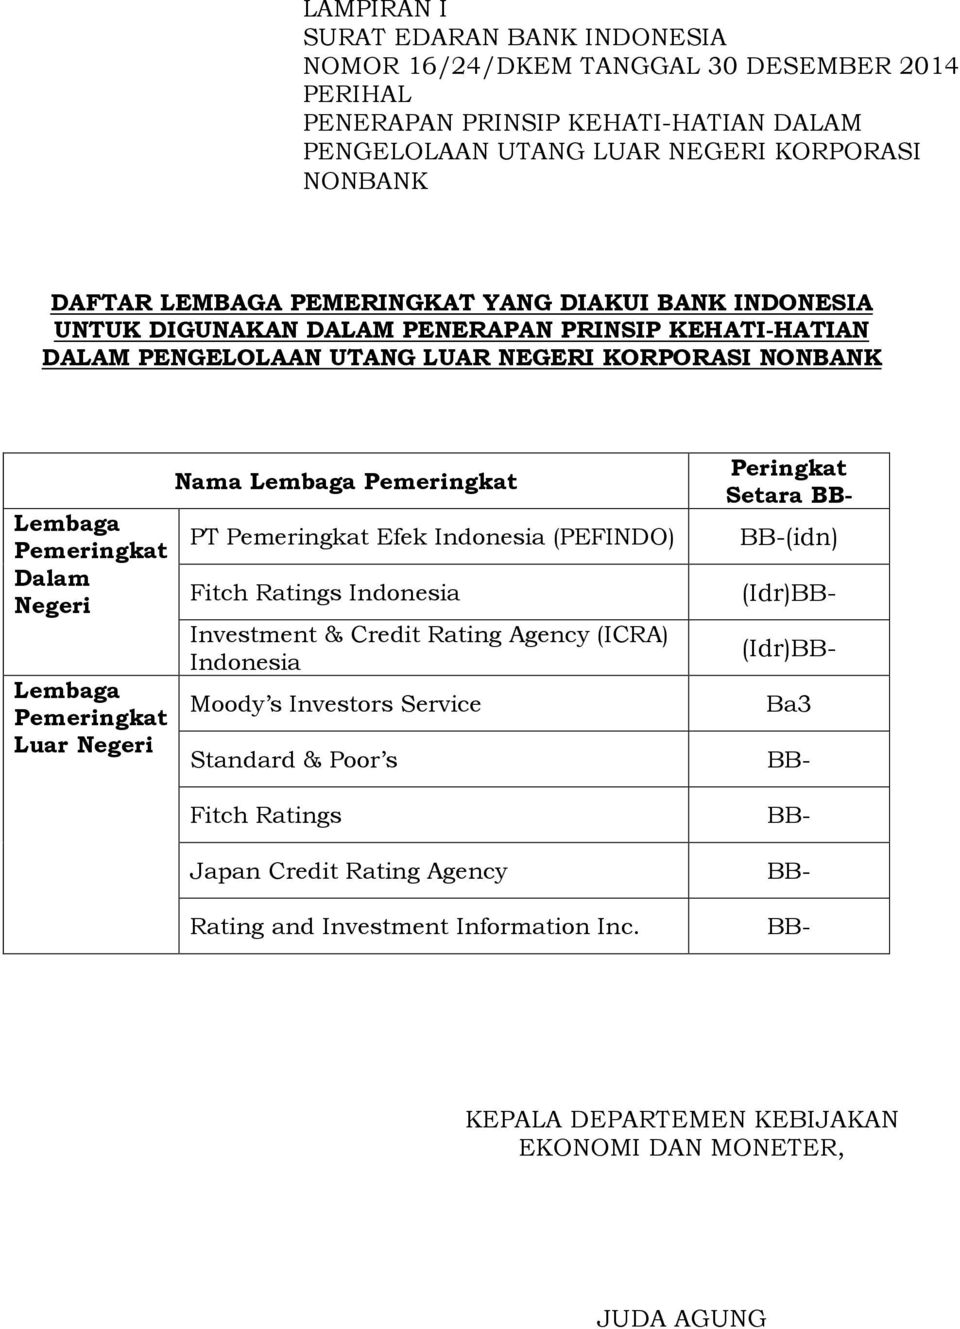 Pemeringkat Luar Negeri Nama Lembaga Pemeringkat PT Pemeringkat Efek Indonesia (PEFINDO) Fitch Ratings Indonesia Investment & Credit Rating Agency (ICRA) Indonesia Moody s Investors Service Standard